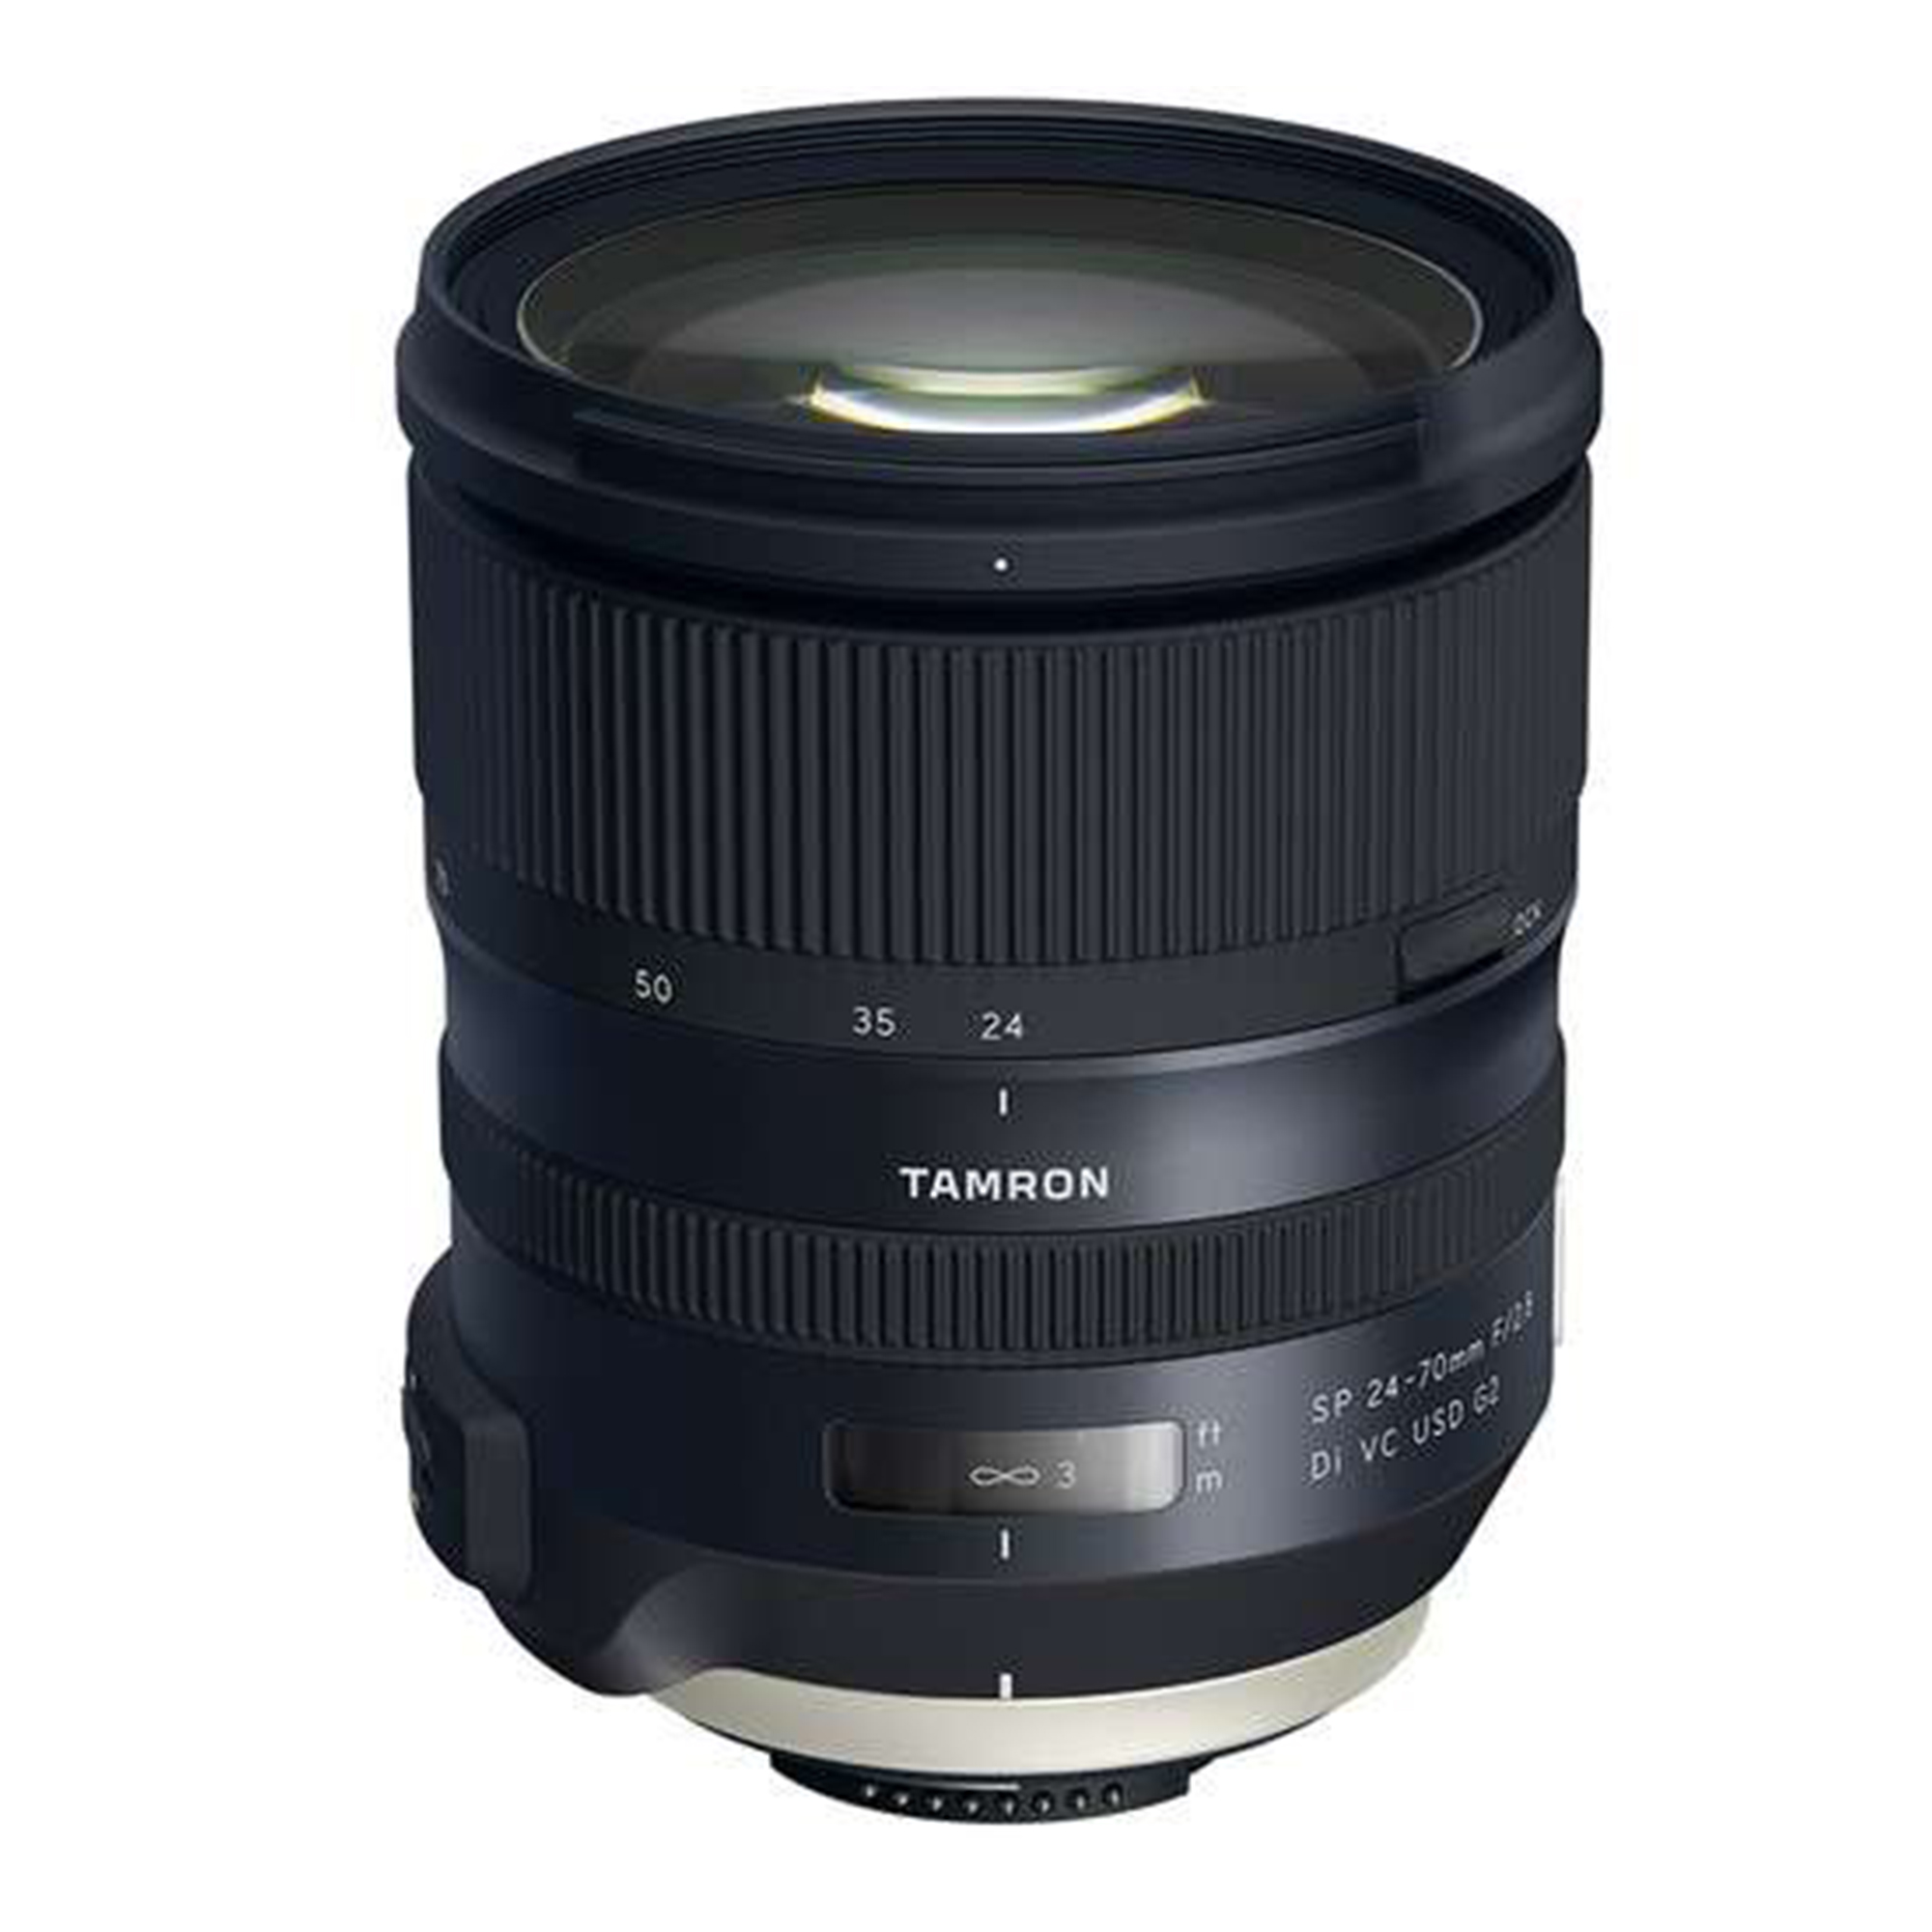 Tamron SP 24-70mm f/2.8 Di VC USD G2 Lens for Nikon ِِAF